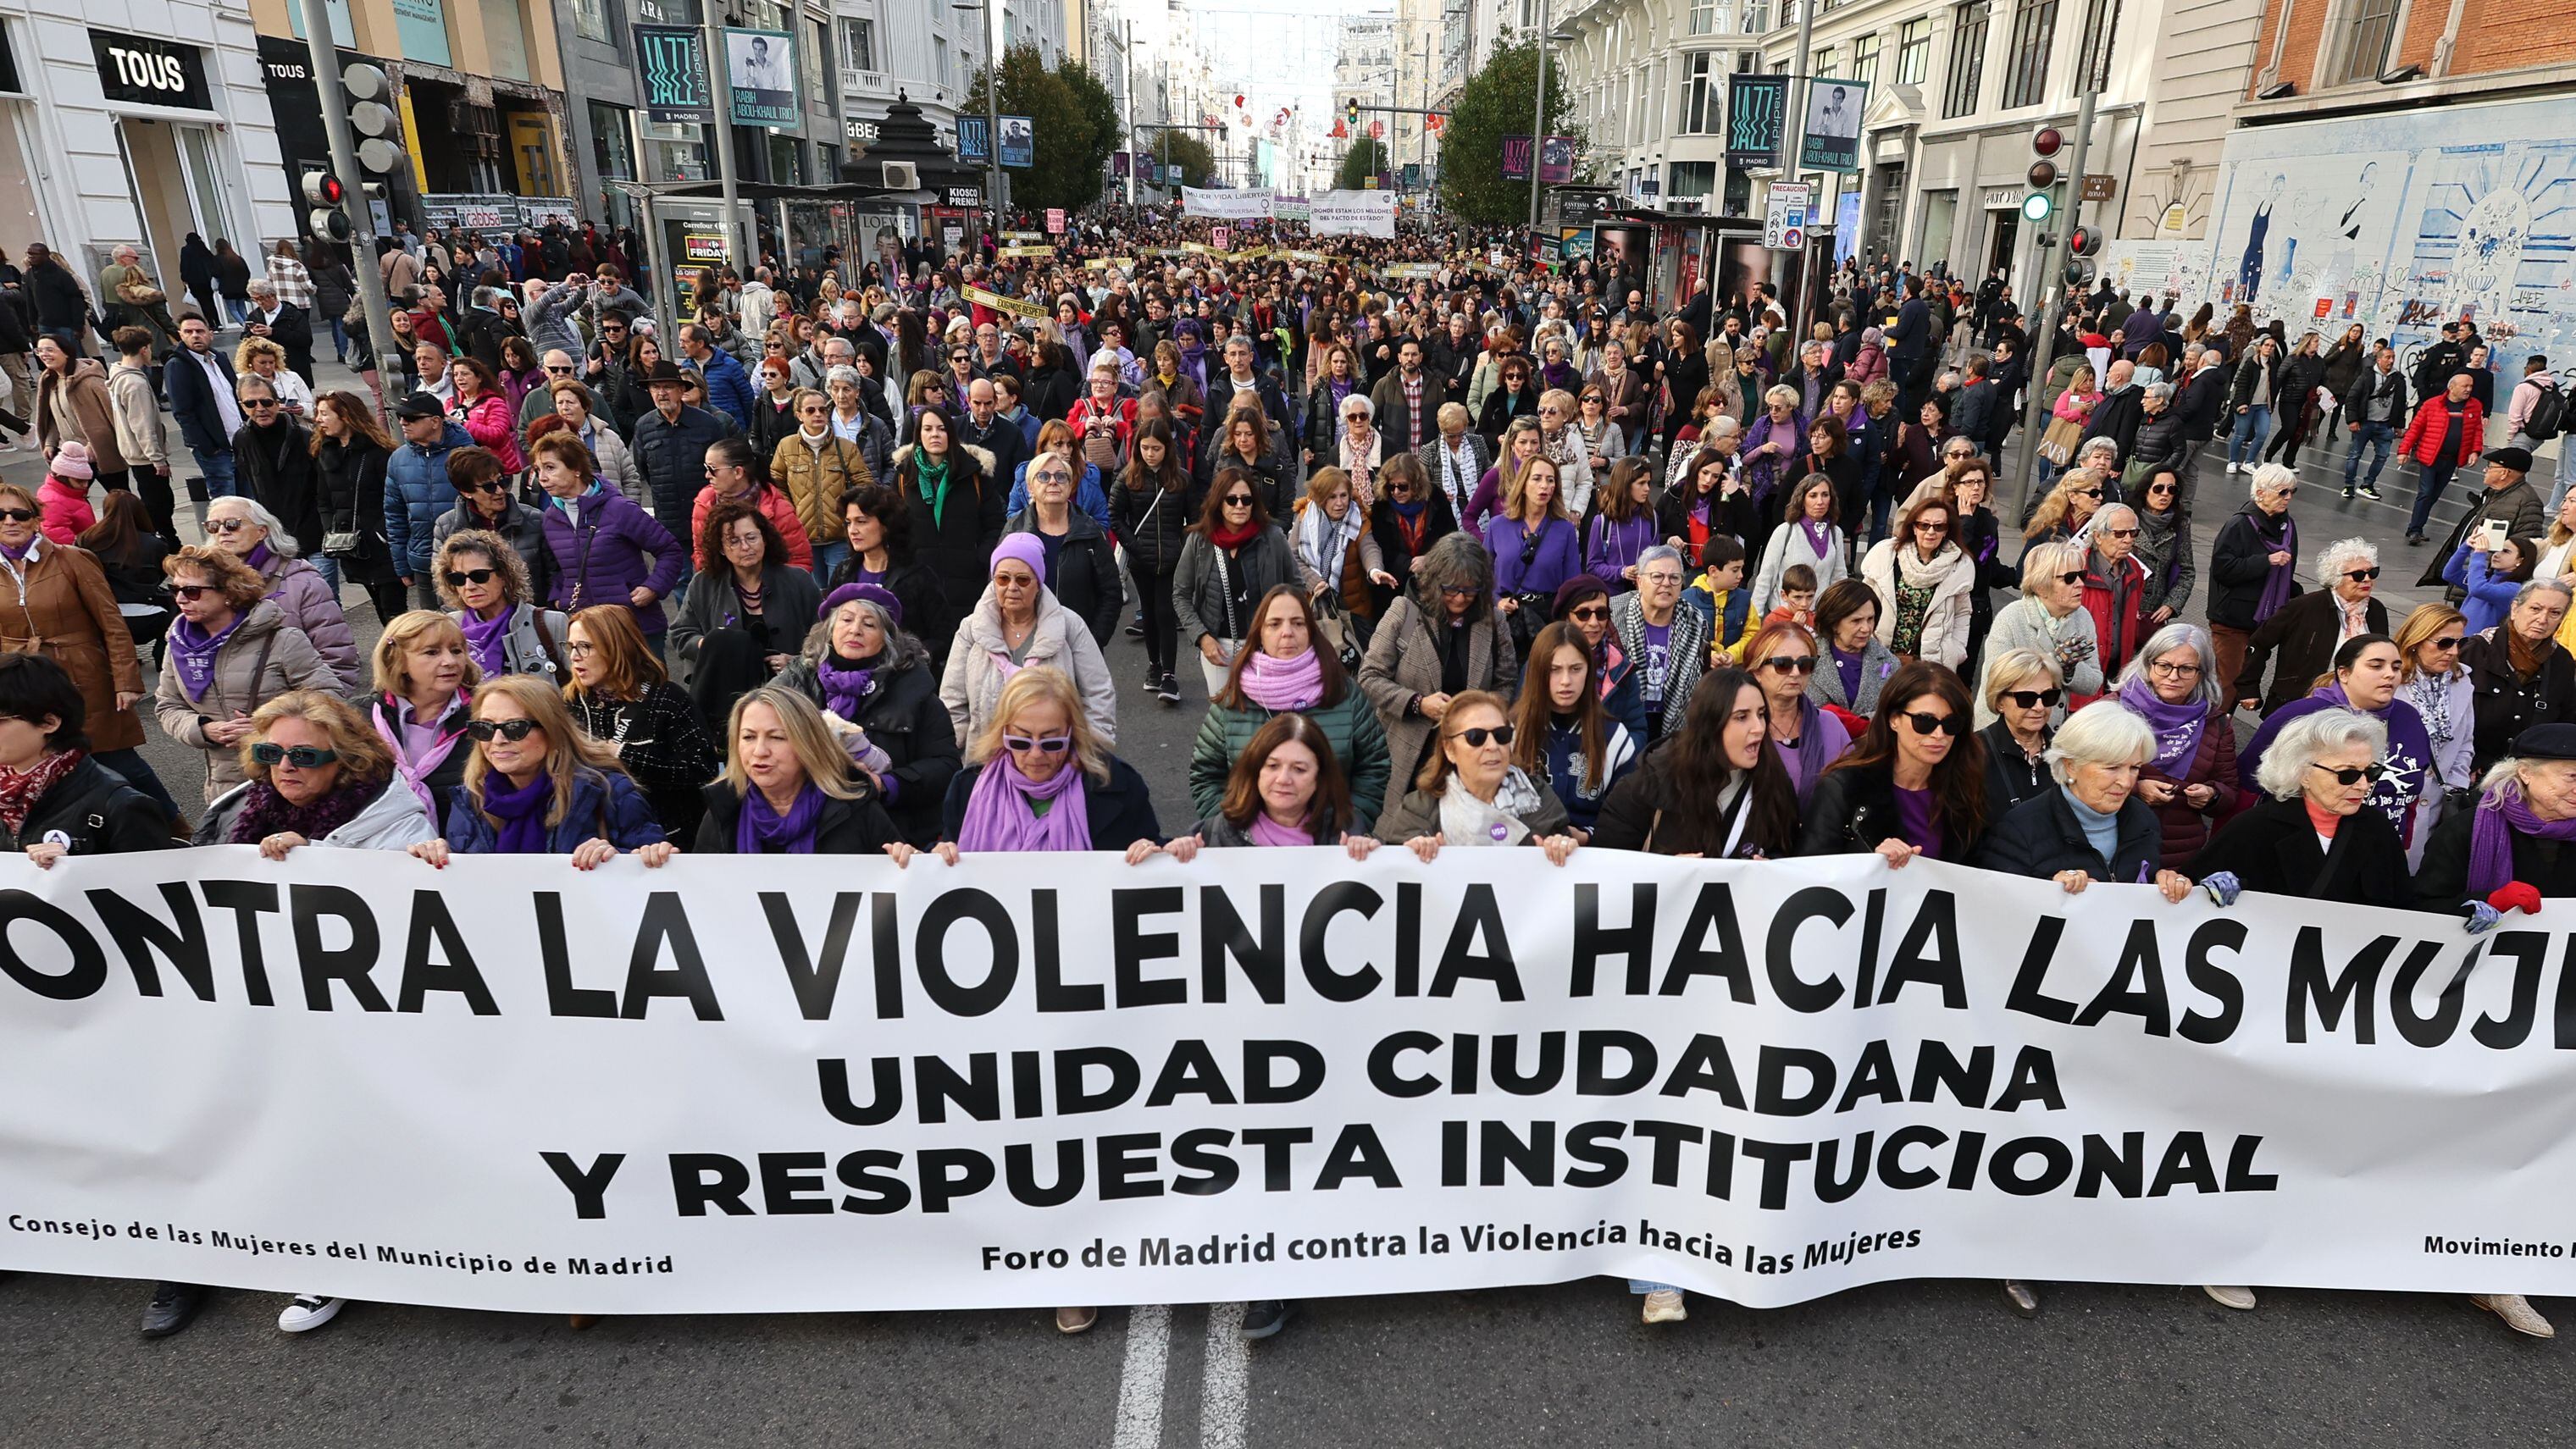 Vista de la manifestación en la calle Gran Vía de Madrid convocada por El Foro de Madrid contra la Violencia a las Mujeres.